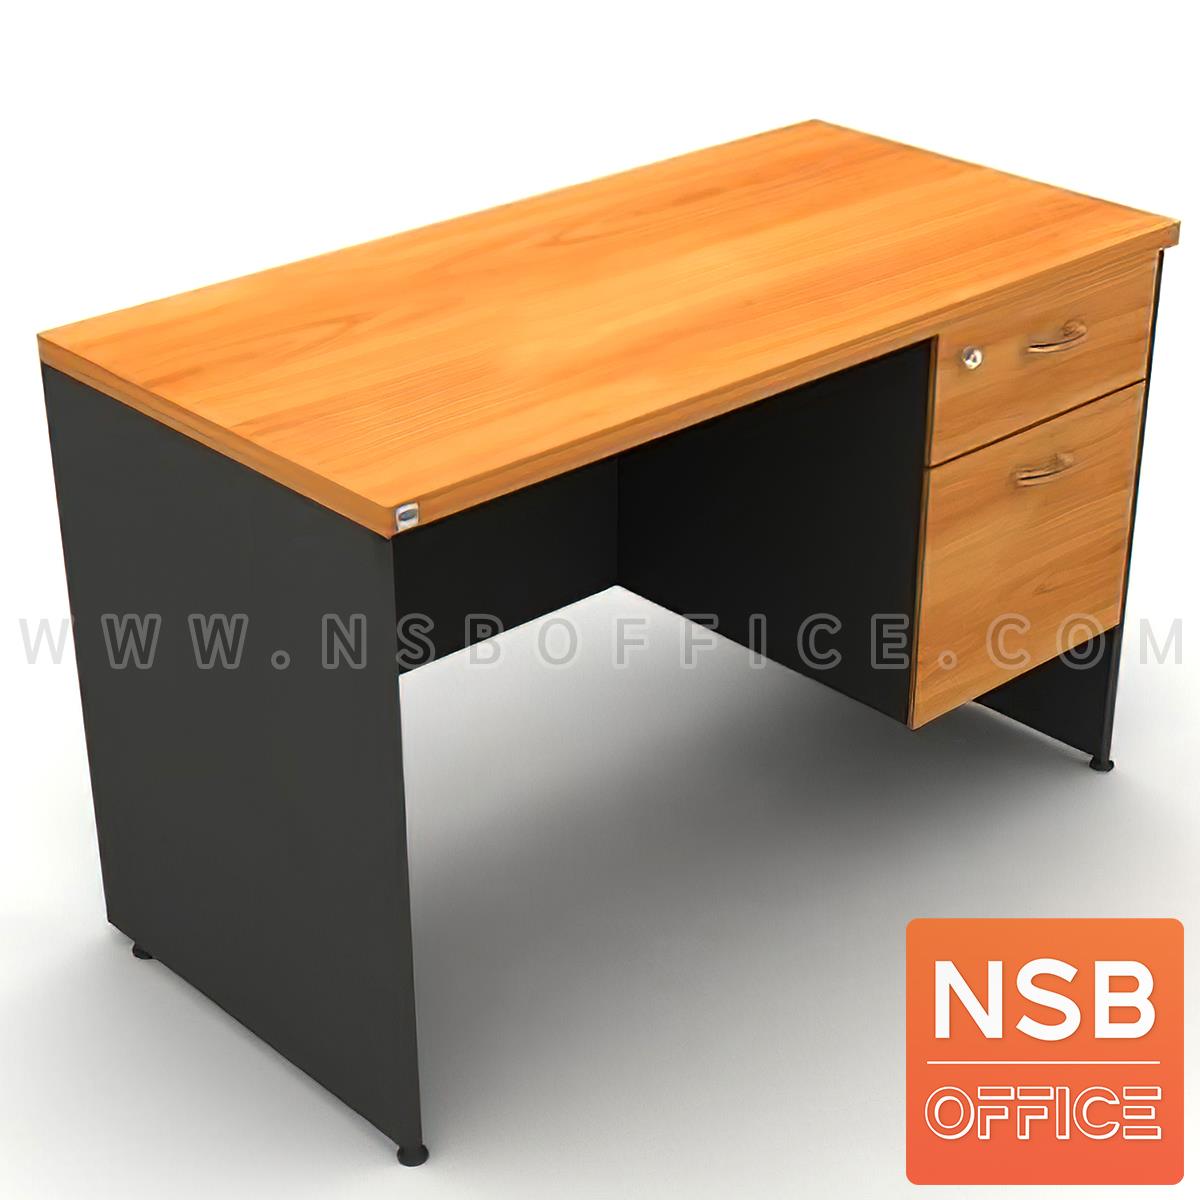 โต๊ะทำงาน 2 ลิ้นชัก  รุ่น Kirshner ขนาด 150W cm. เมลามีน สีเชอร์รี่ดำ